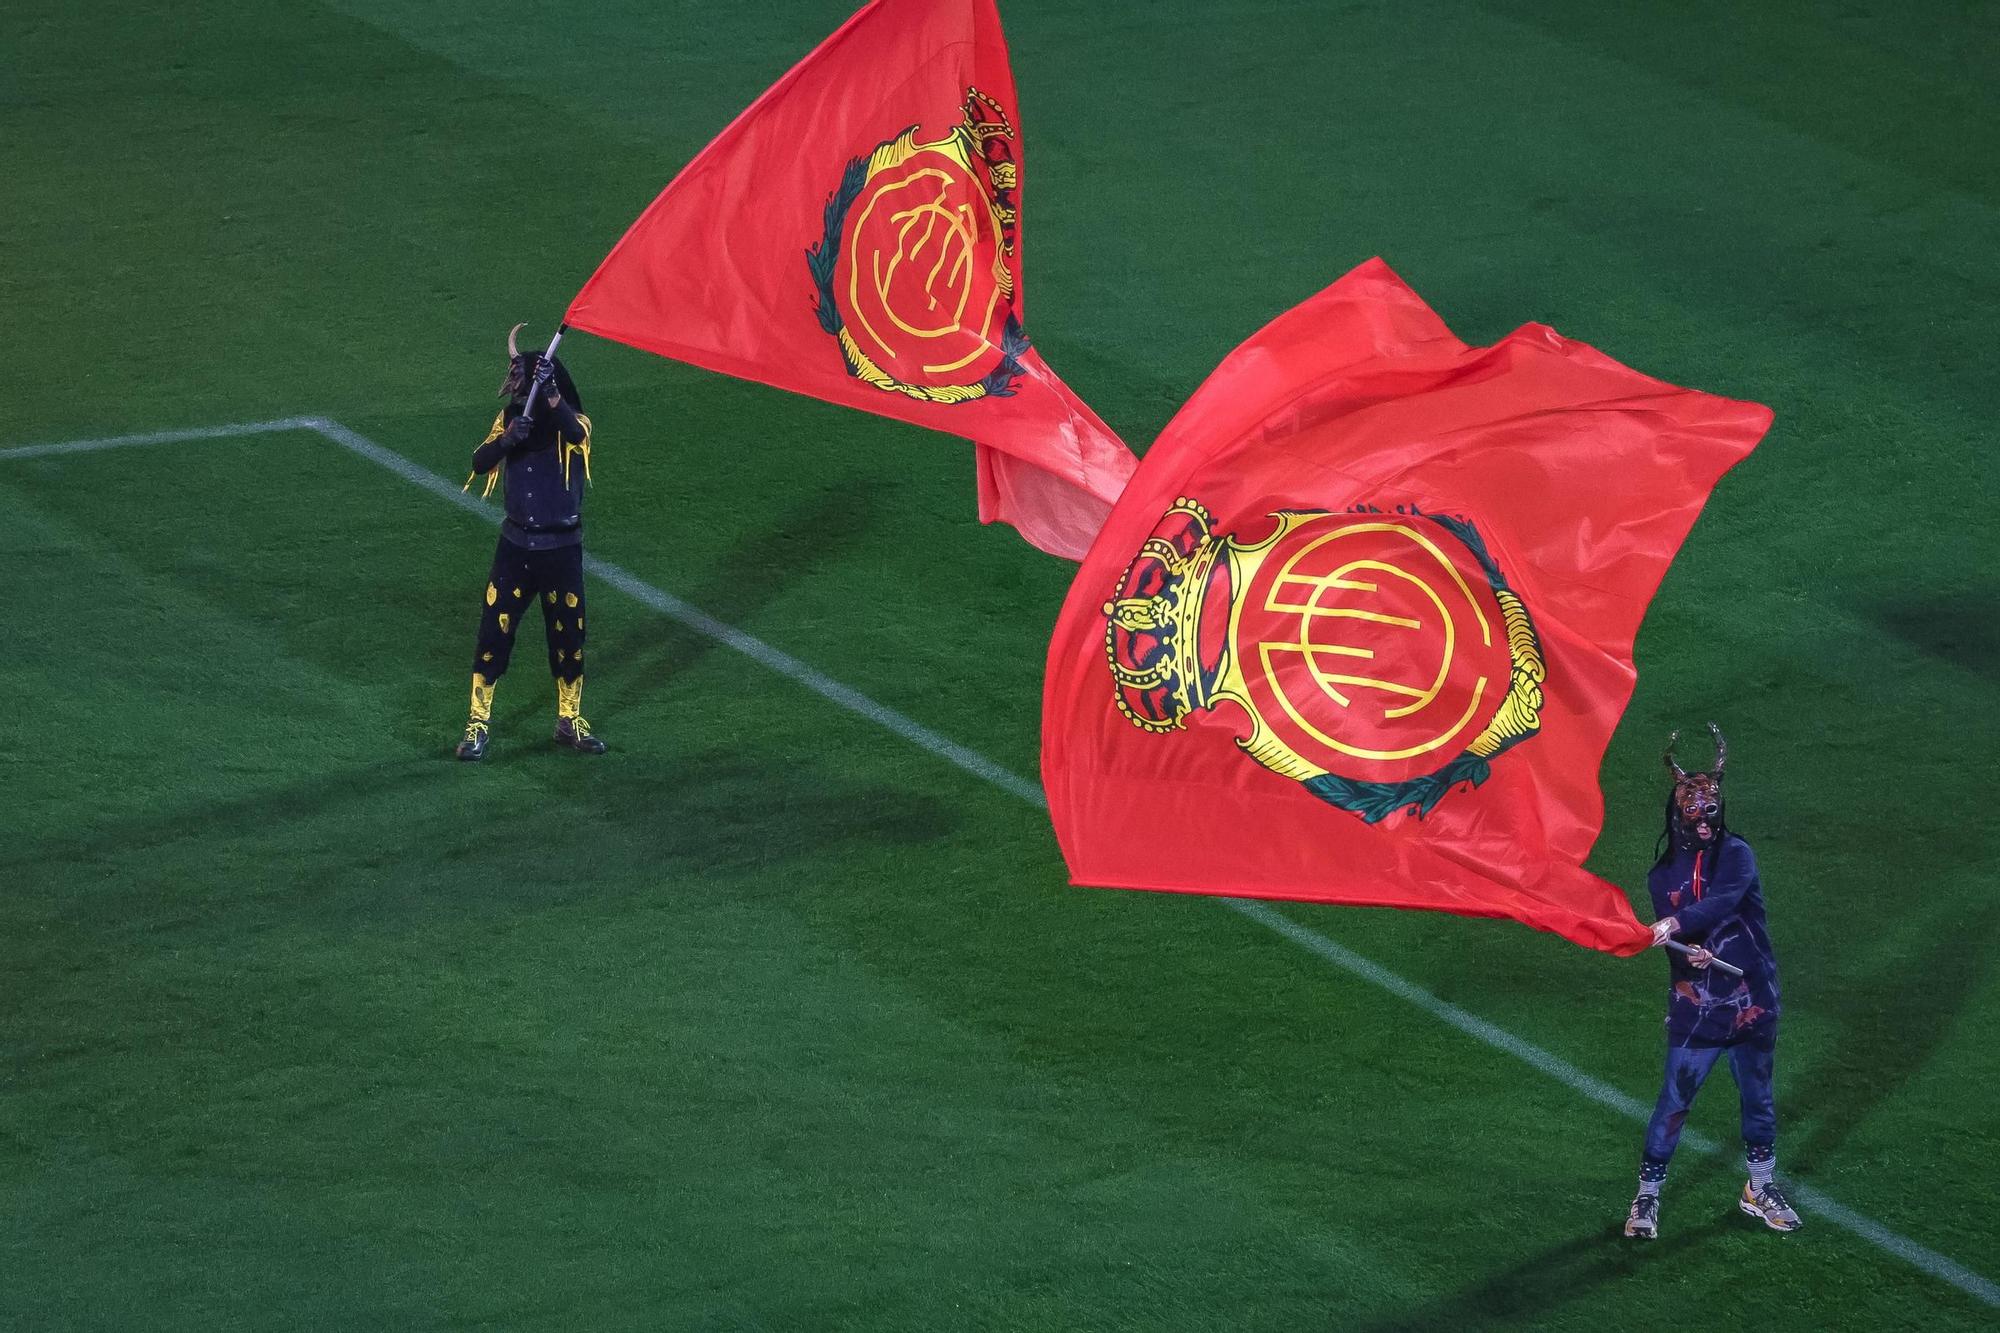 Empfang und Spektakel: So feierte Real Mallorca das rundumerneuerte Stadion Son Moix